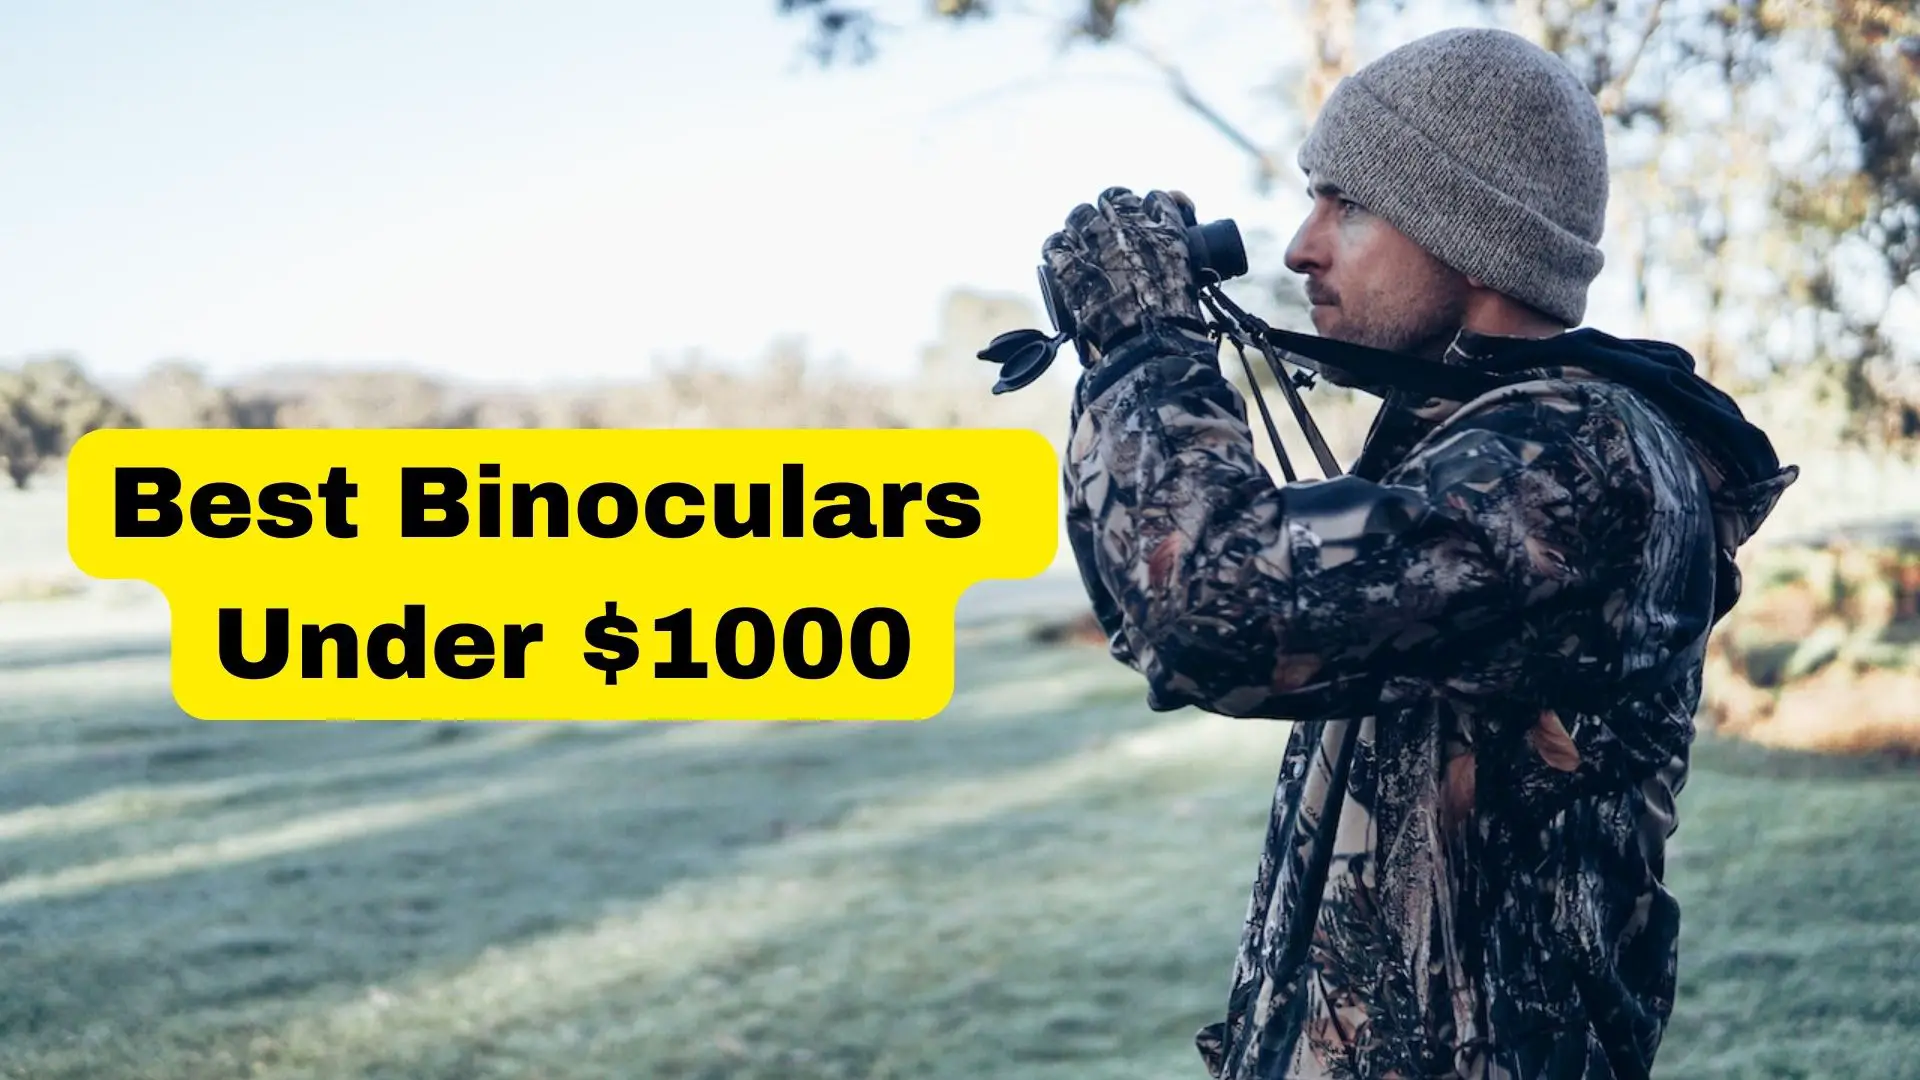 Best Binoculars Under $1000